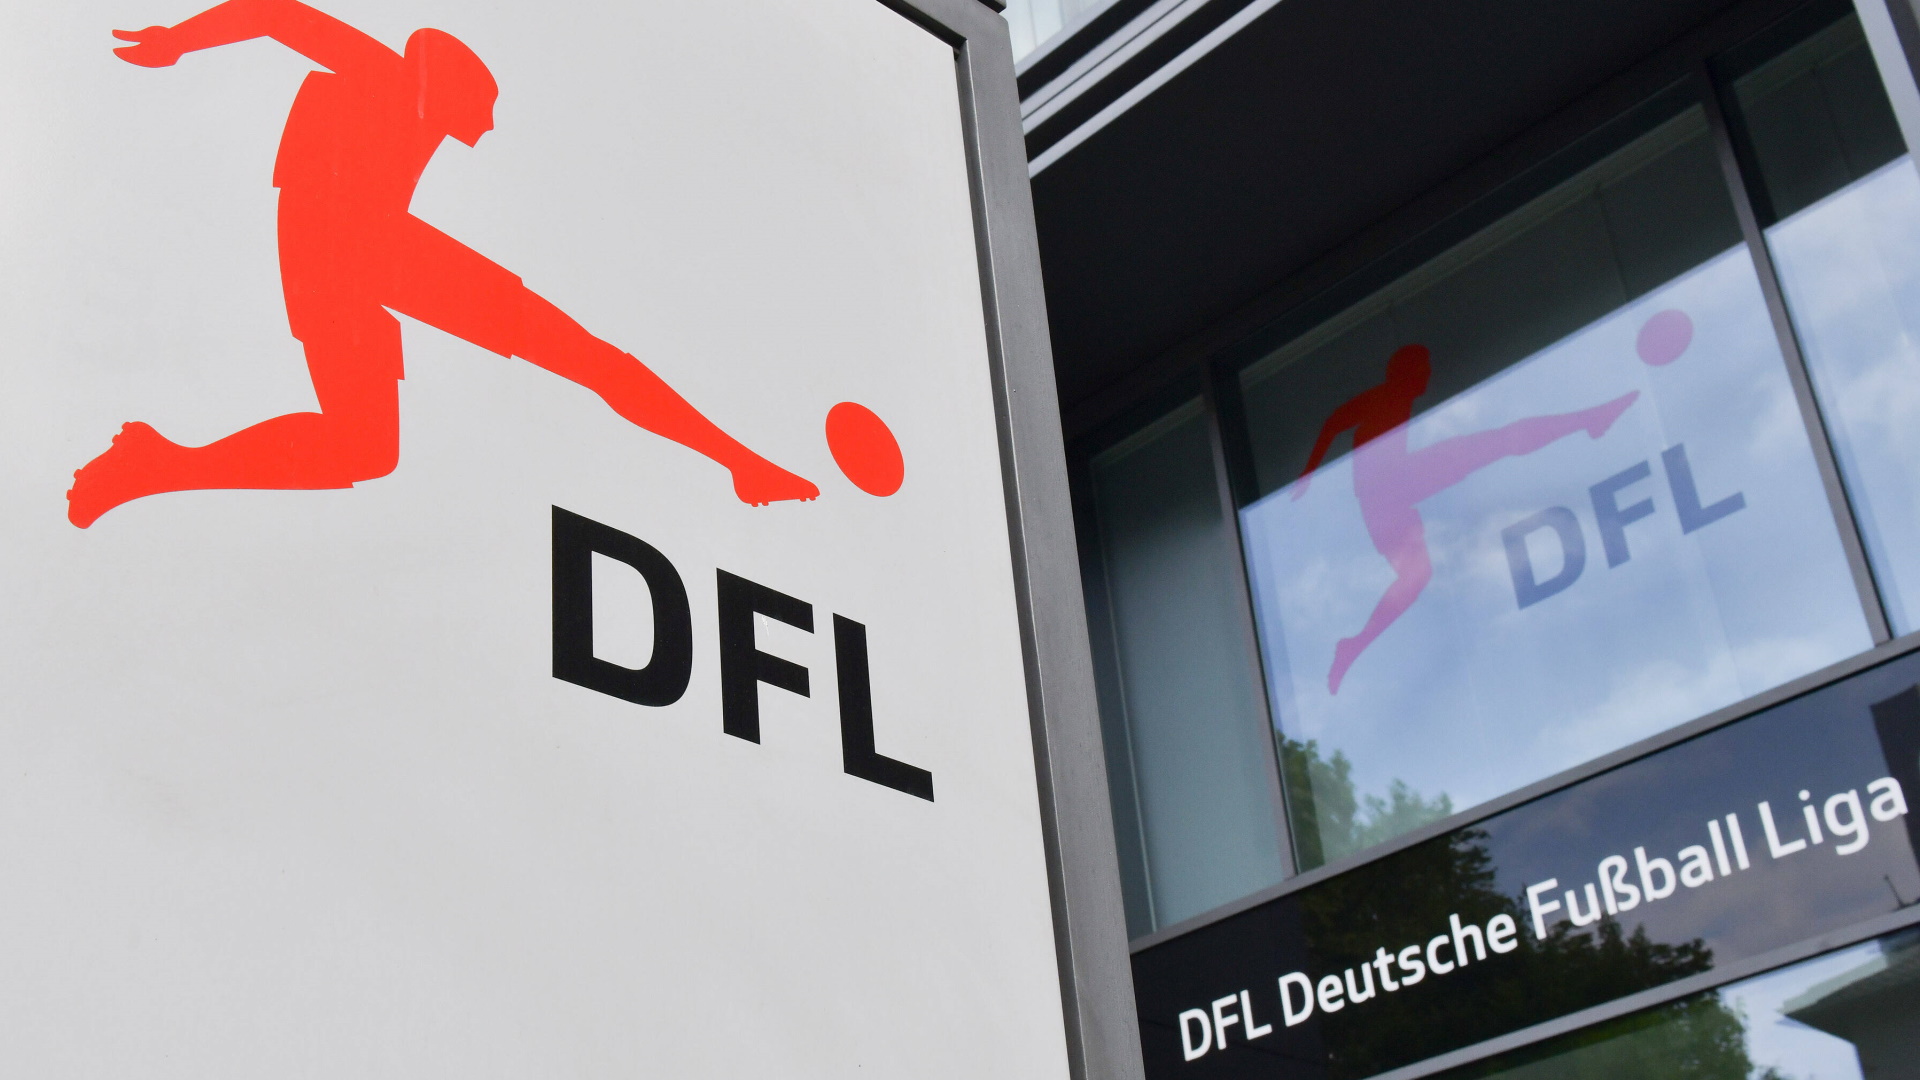 Bundesliga DFL Relegation